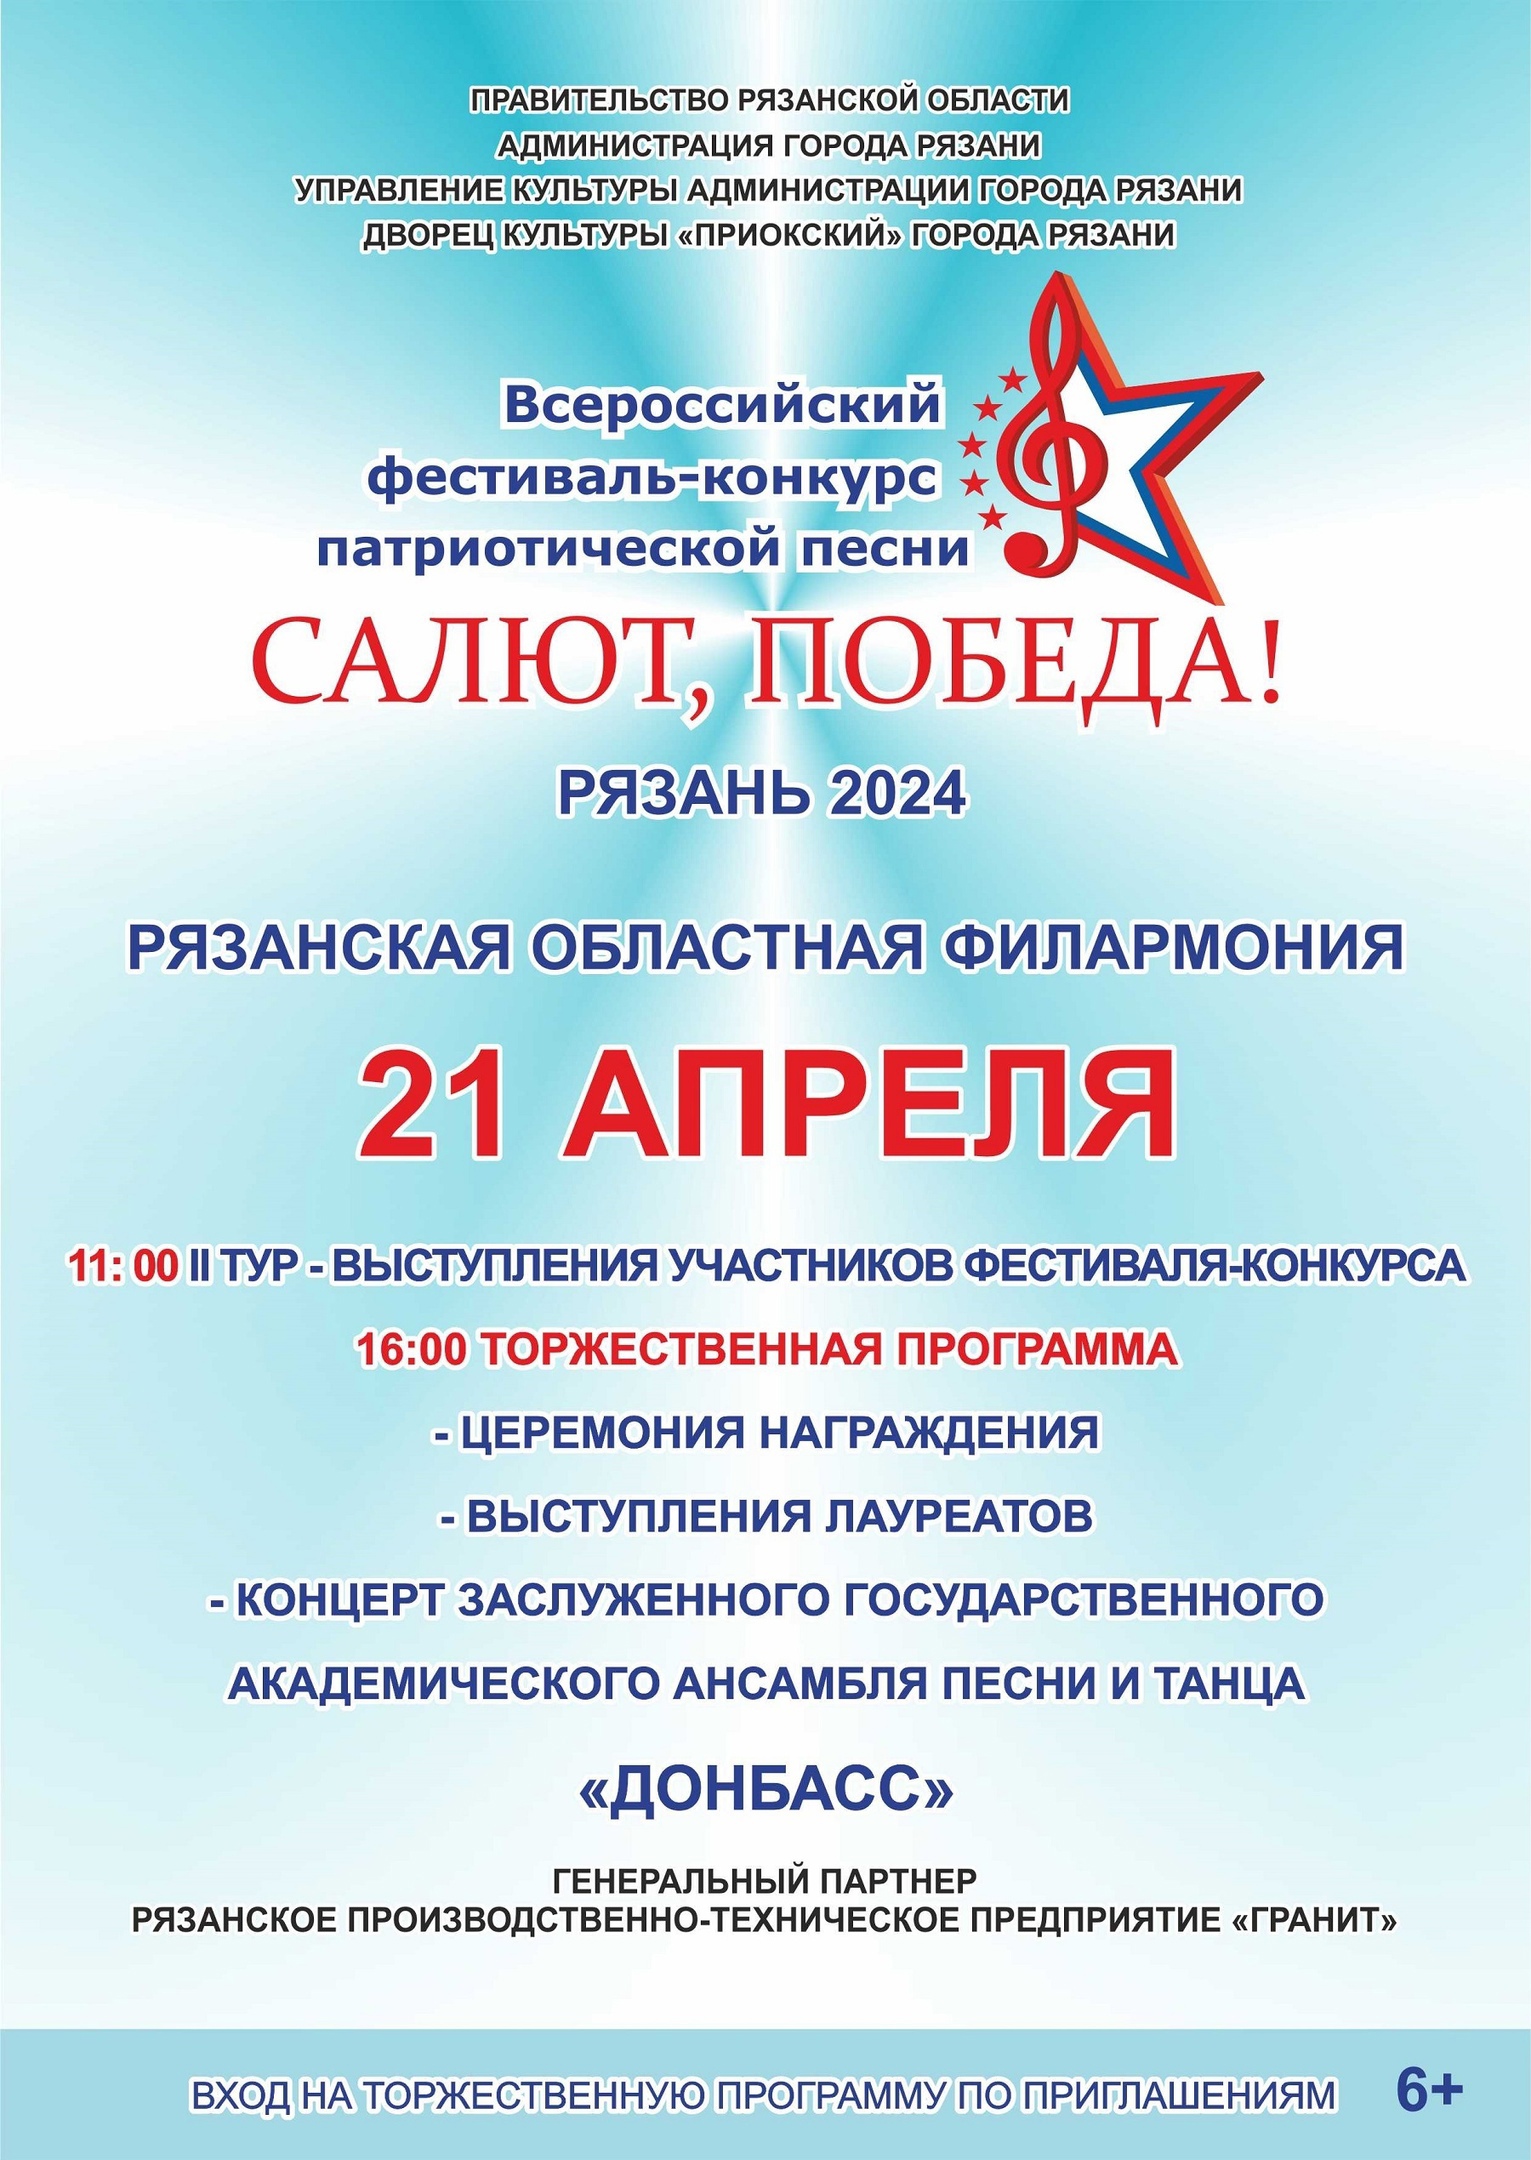 Жителей города приглашают на Всероссийский фестиваль-конкурс патриотической песни «САЛЮТ, ПОБЕДА!»